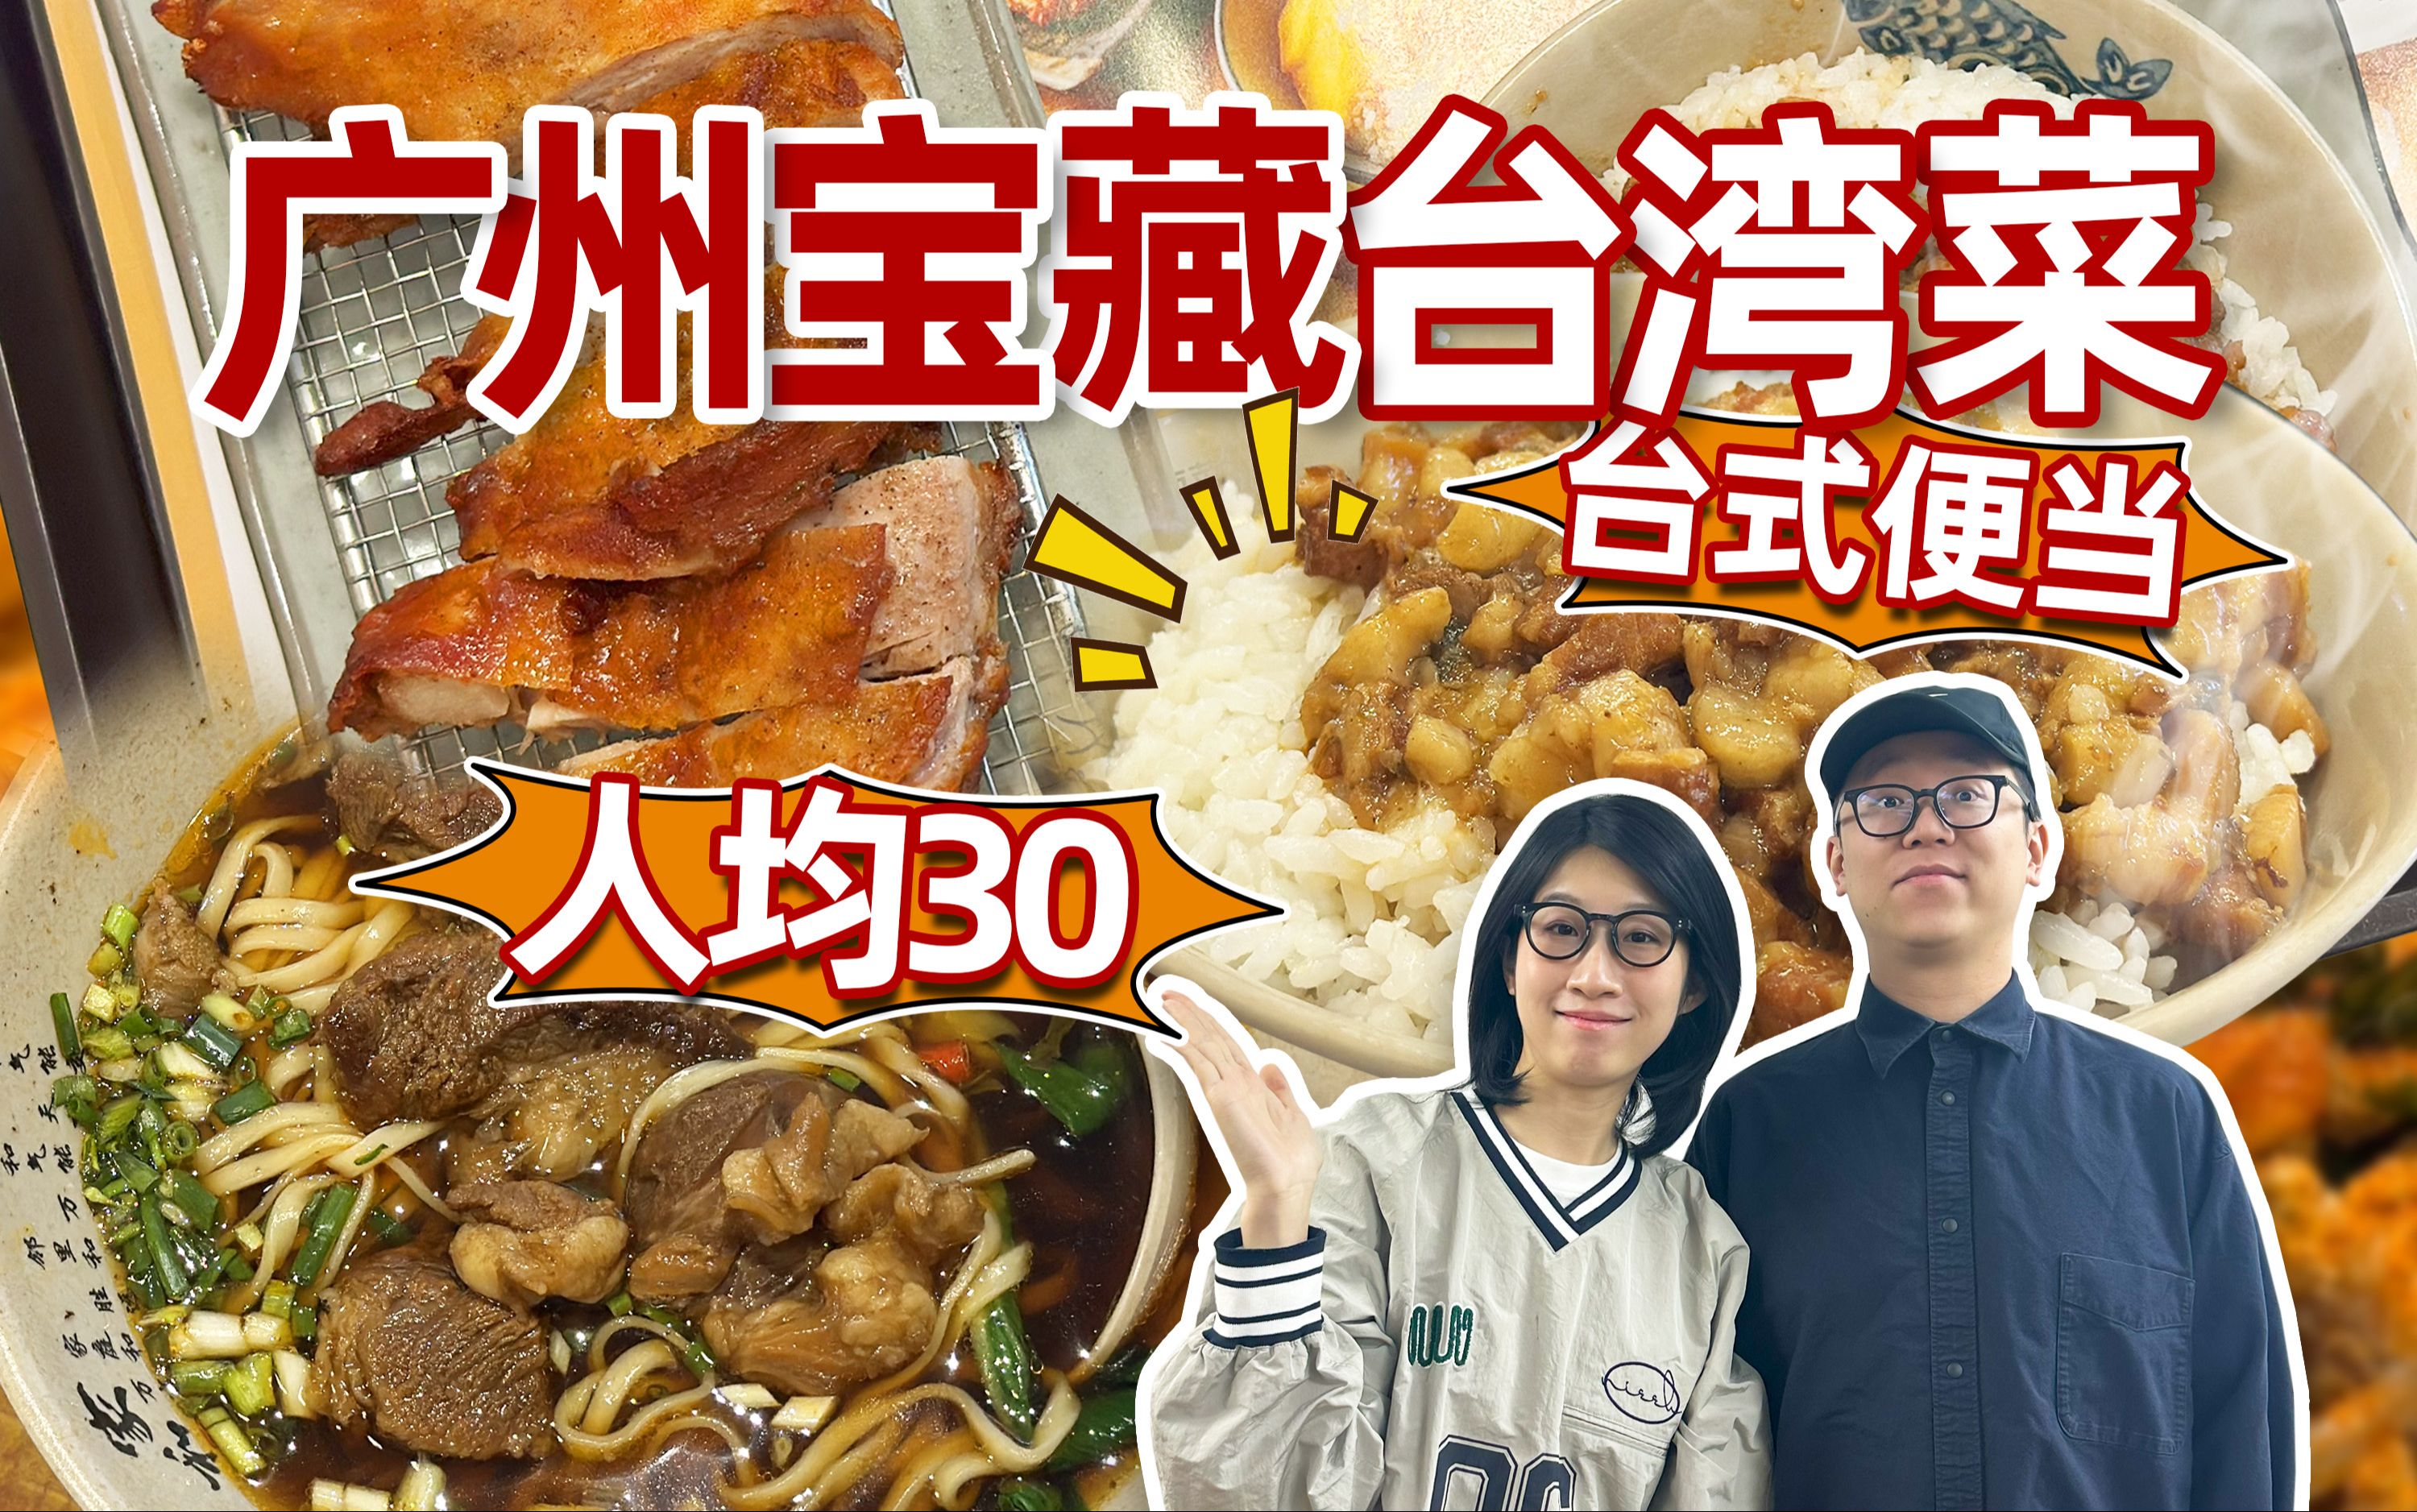 广州人均30，朋友一个月吃了10多次的台湾快餐小店